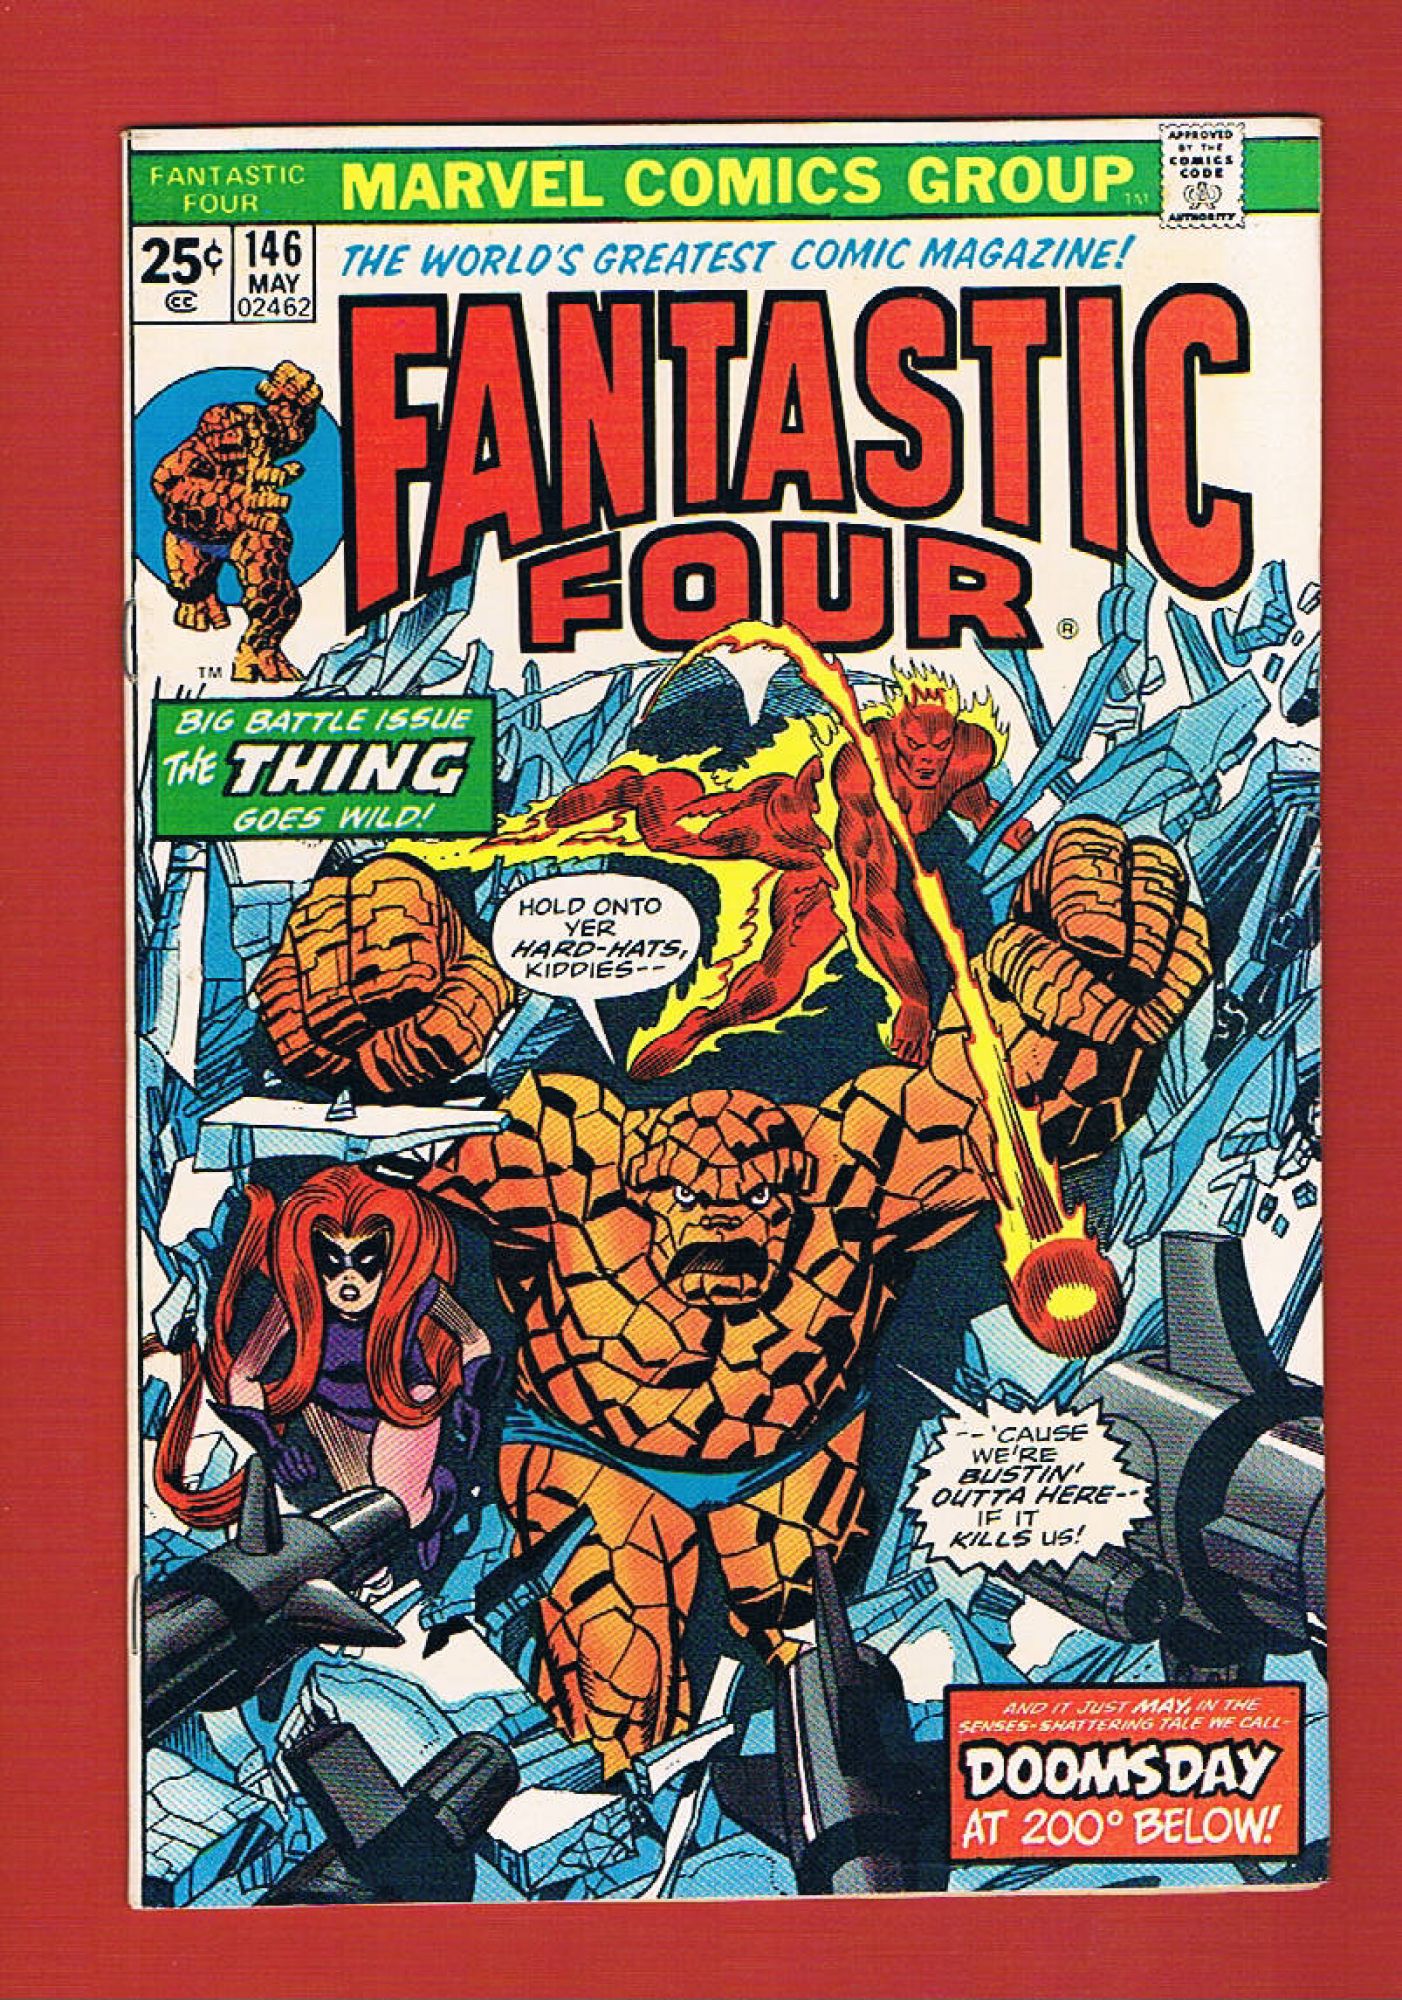 Fantastic Four #146, May 1974, 8.5 VF+